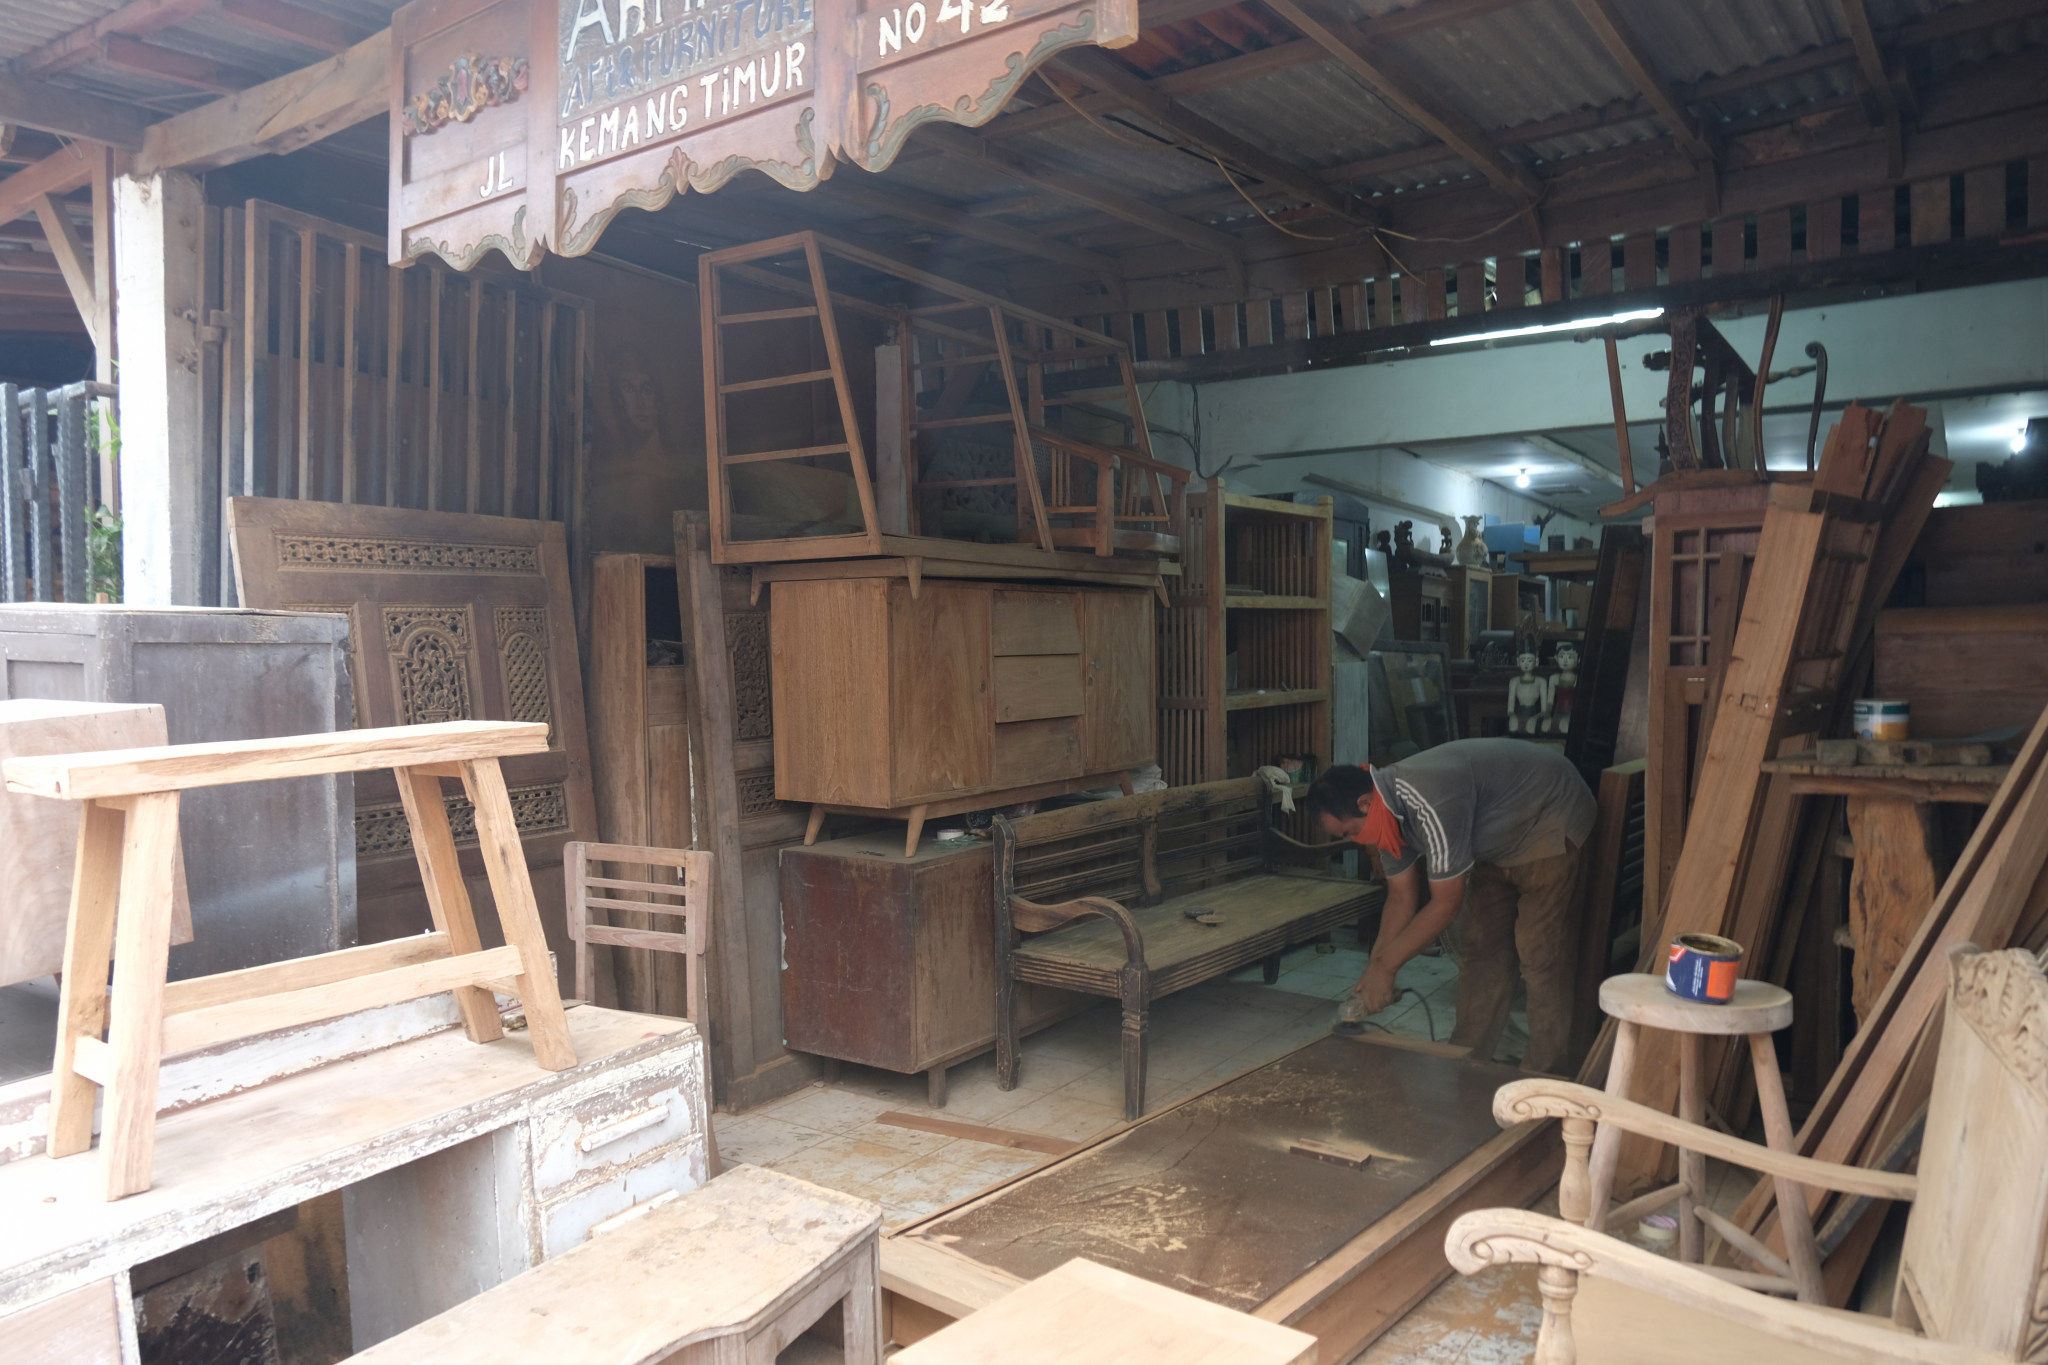 <p>Pekerja menyelesaikan pembuatan produk mebel di workshop furniture kawasan Kemang Utara, Jakarta, Kamis, 26 November 2020. Foto: Ismail Pohan/TrenAsia</p>
